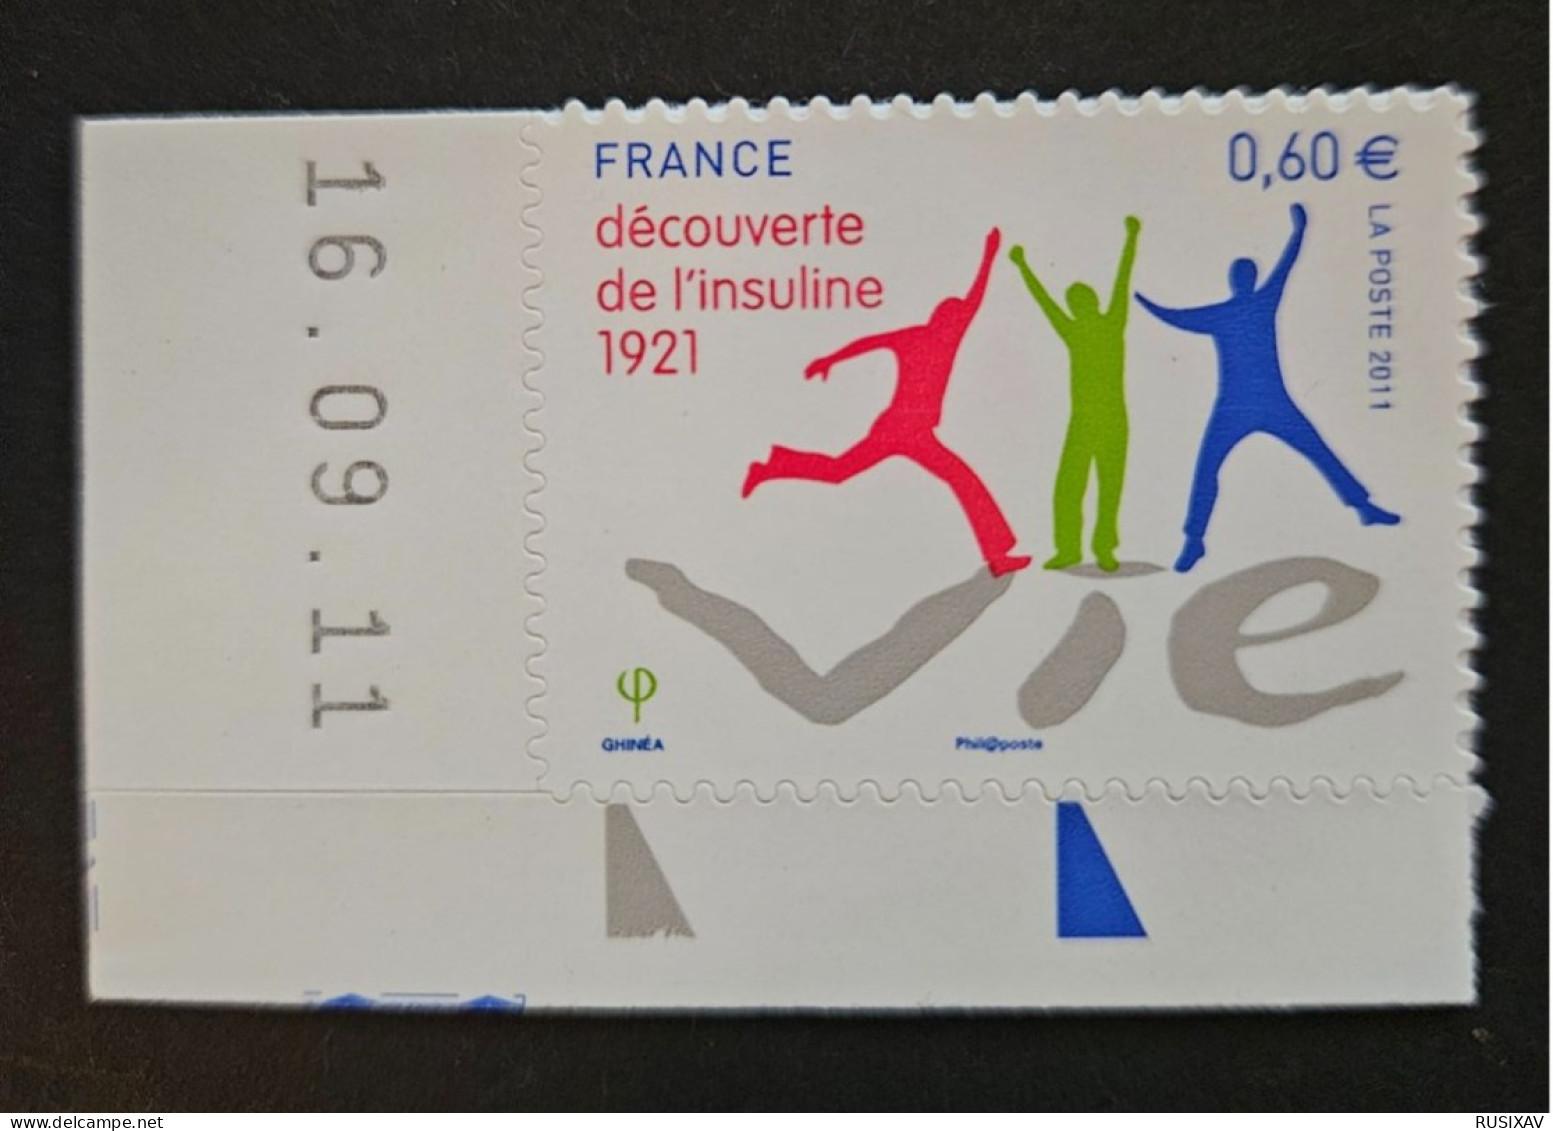 France 2011 Autoadhésif N°635 DECOUVERTE DE L'INSULINE - Unused Stamps